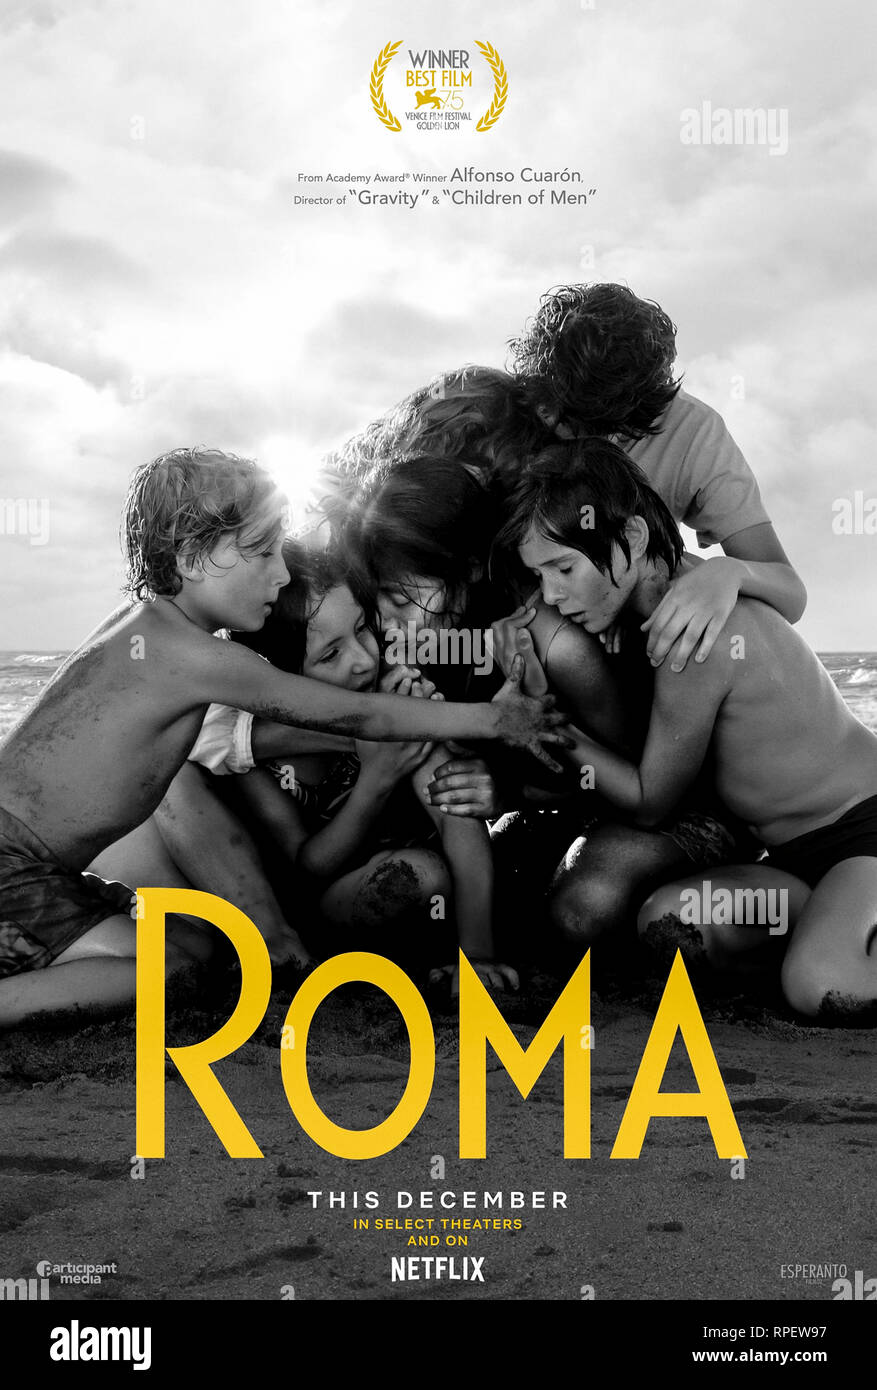 Roma (2018) unter der Regie von Alfonso Cuarón mit Yalitza Aparicio, Marina de Tavira und Diego Cortina Autrey. Hochgelobter Film über das persönliche Leben eines mexikanischen Hausdieners. Stockfoto